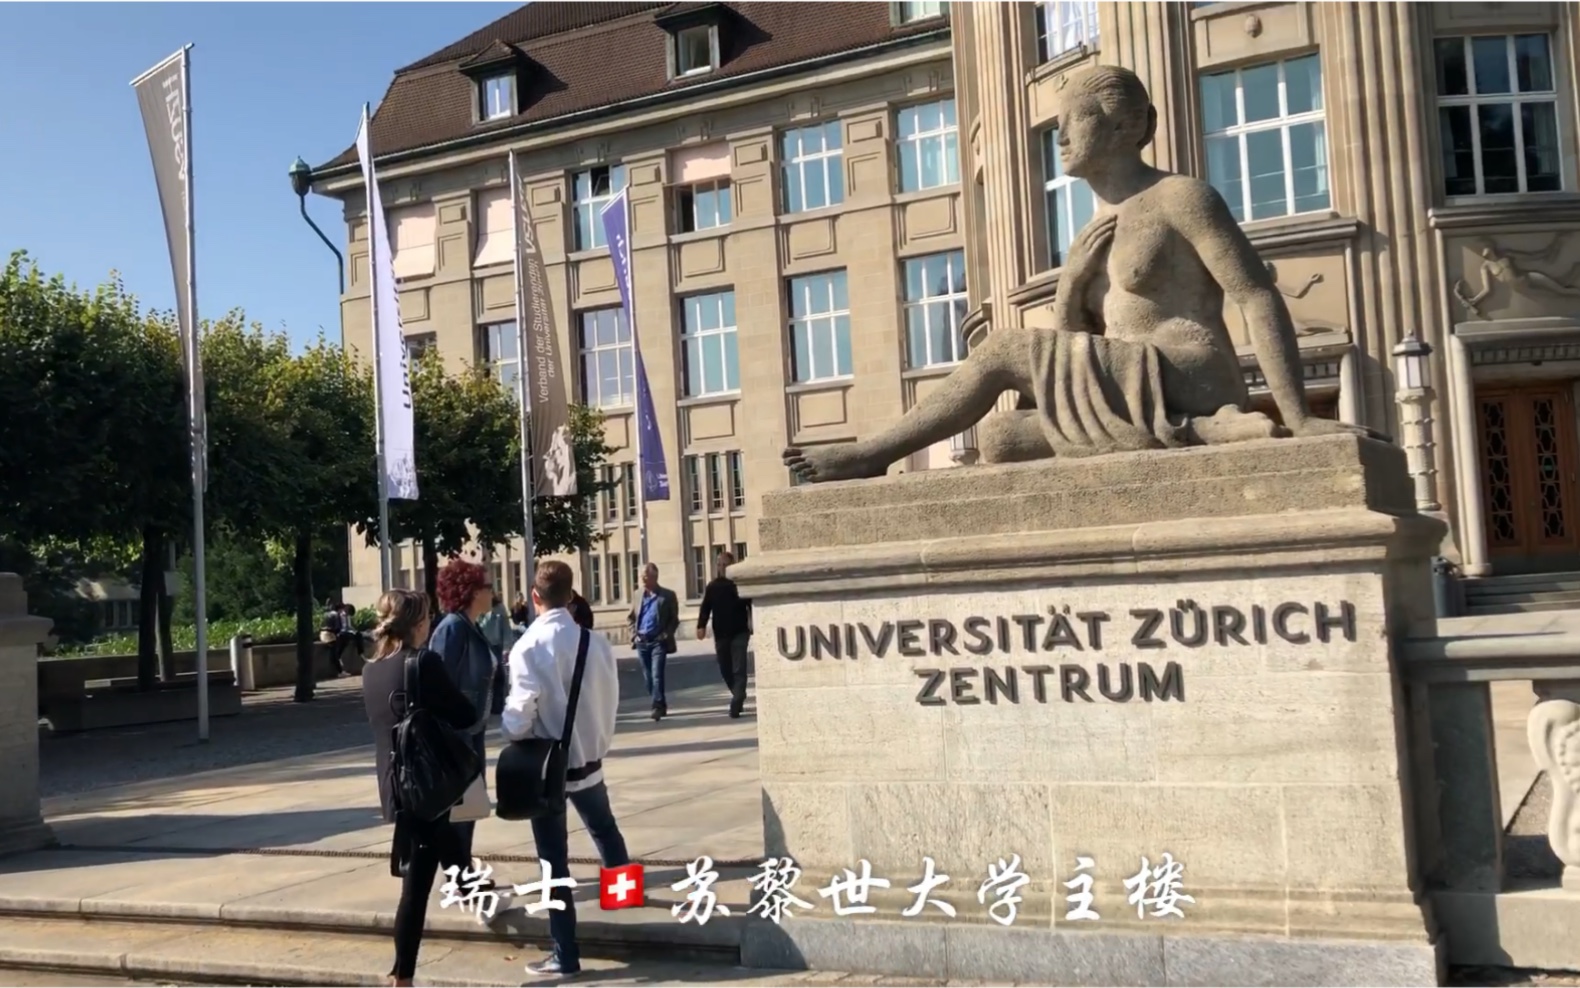 瑞士苏黎世大学uzh主楼的随拍九月的天空依旧明媚应一网友的希望随拍